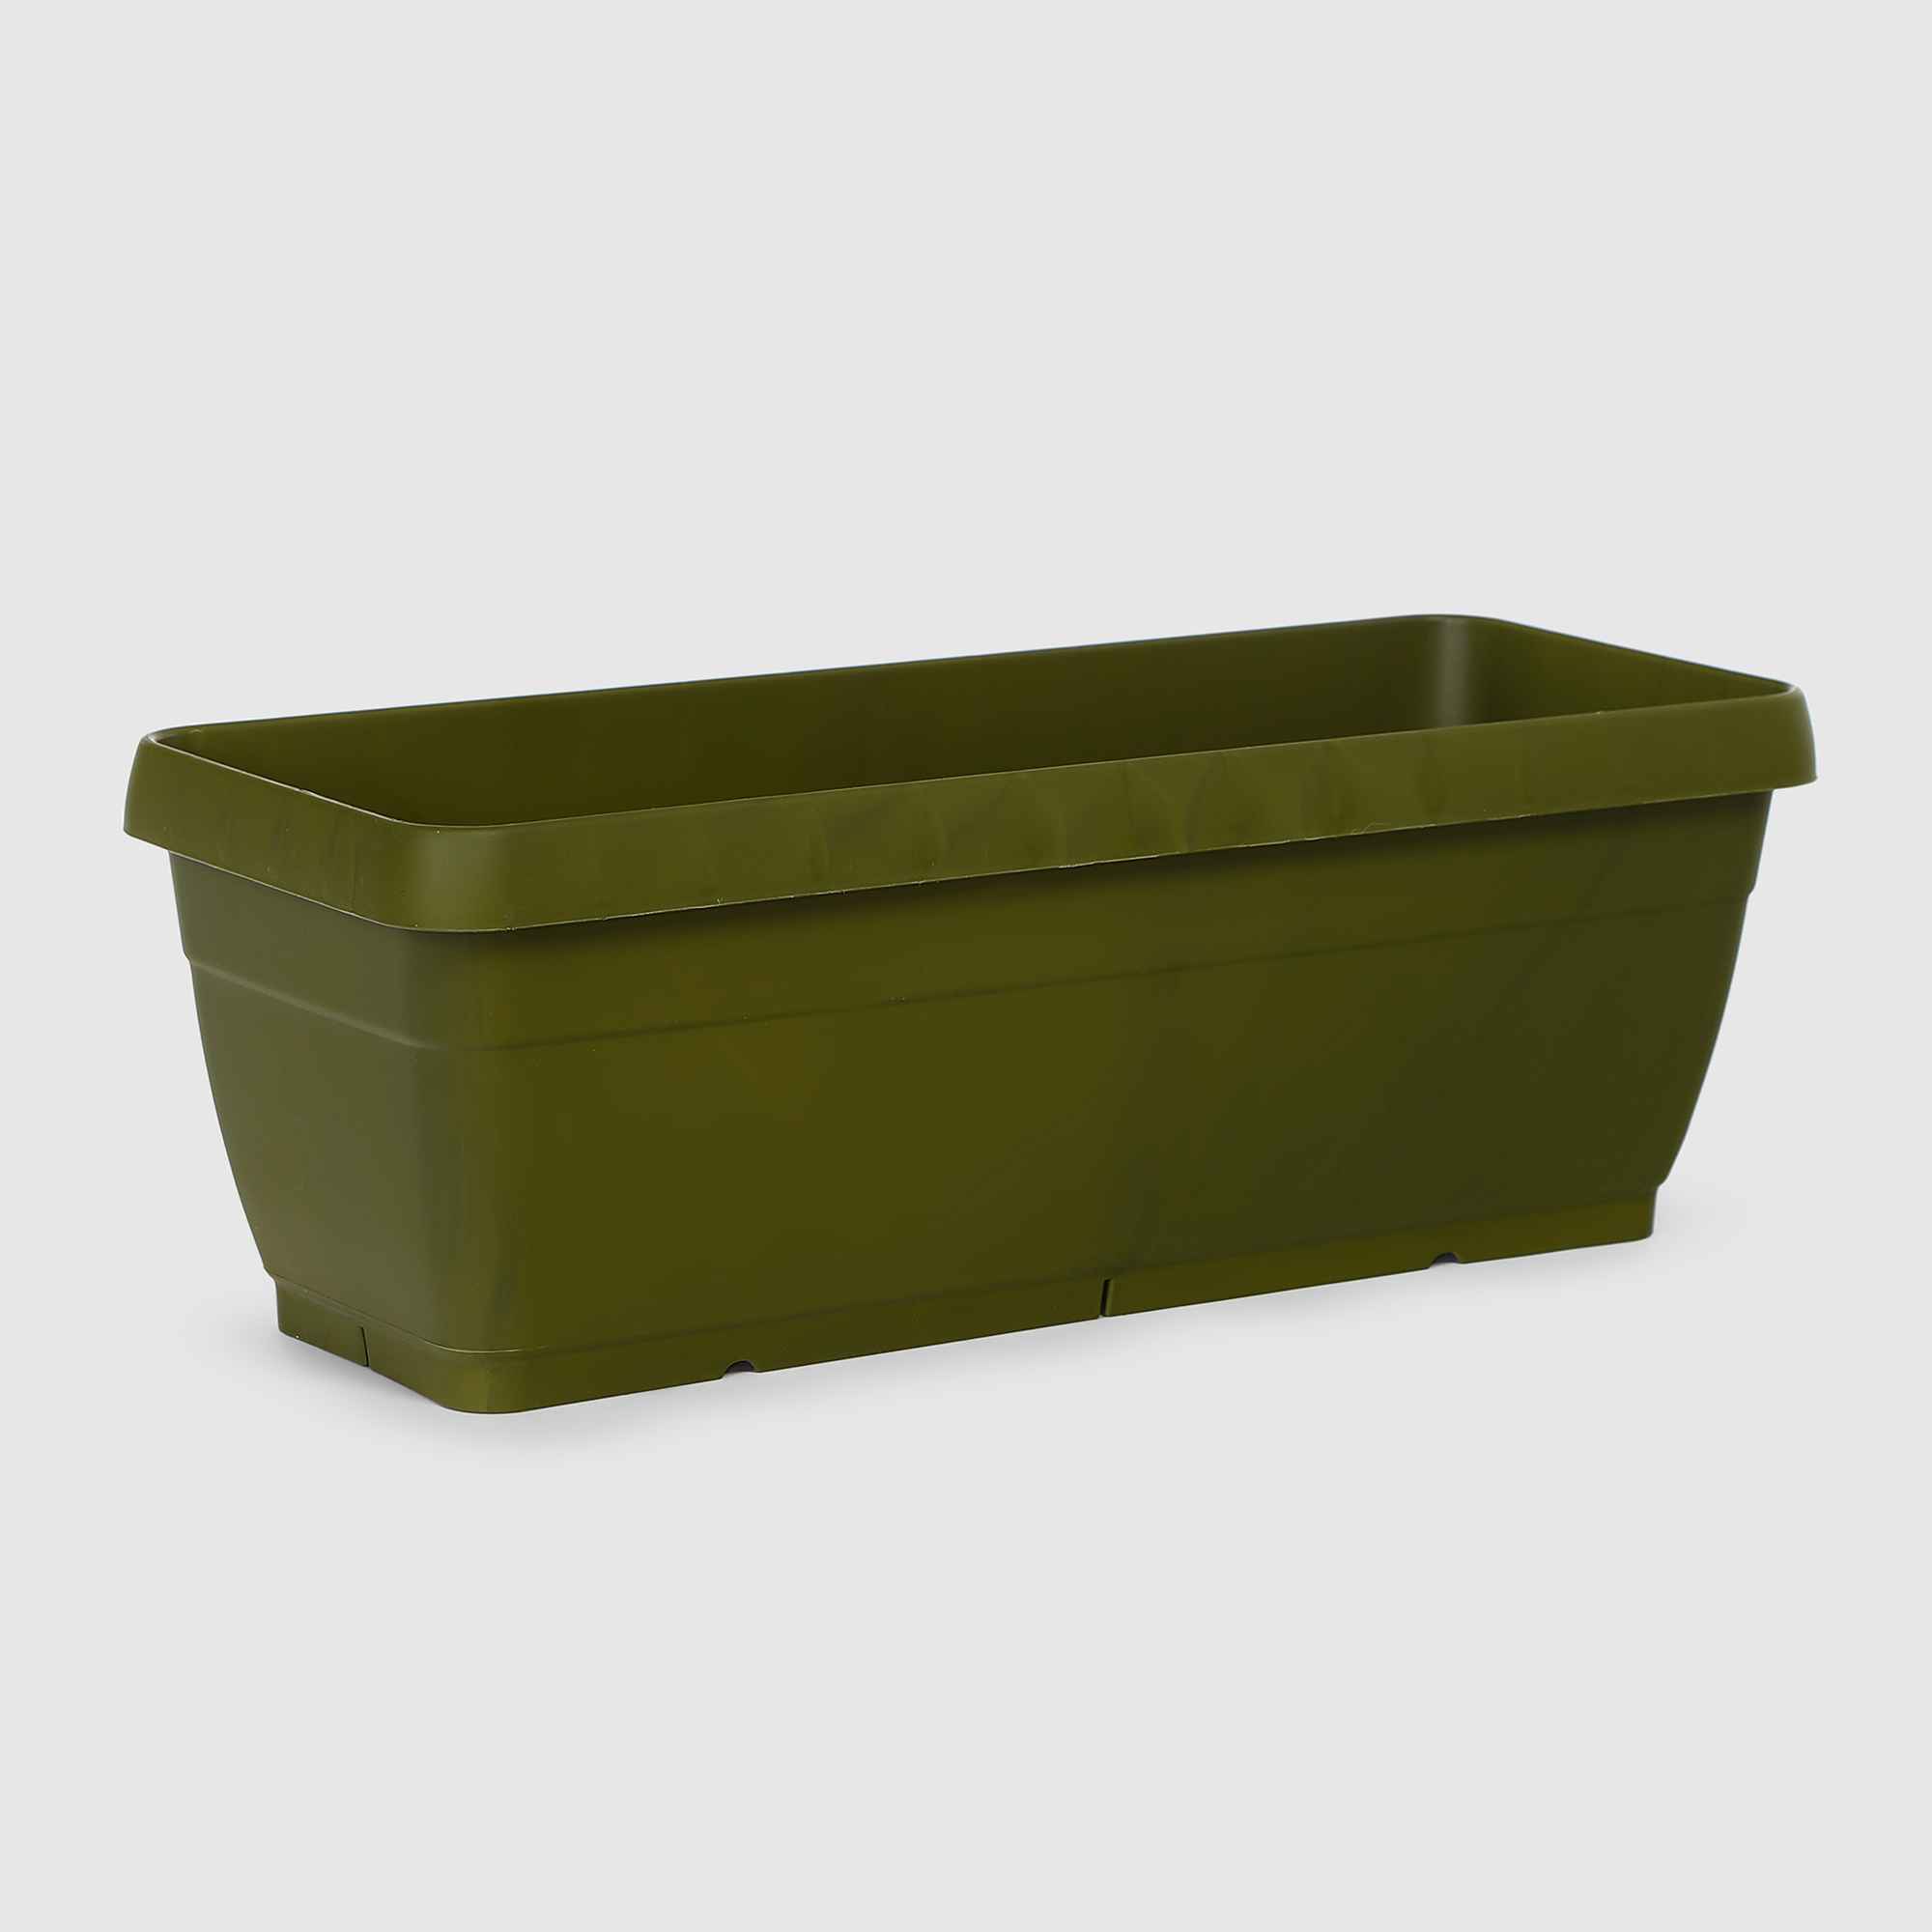 Ящик балконный Polimod Manolya 49.5x19.5 см зеленое, цвет зелёный